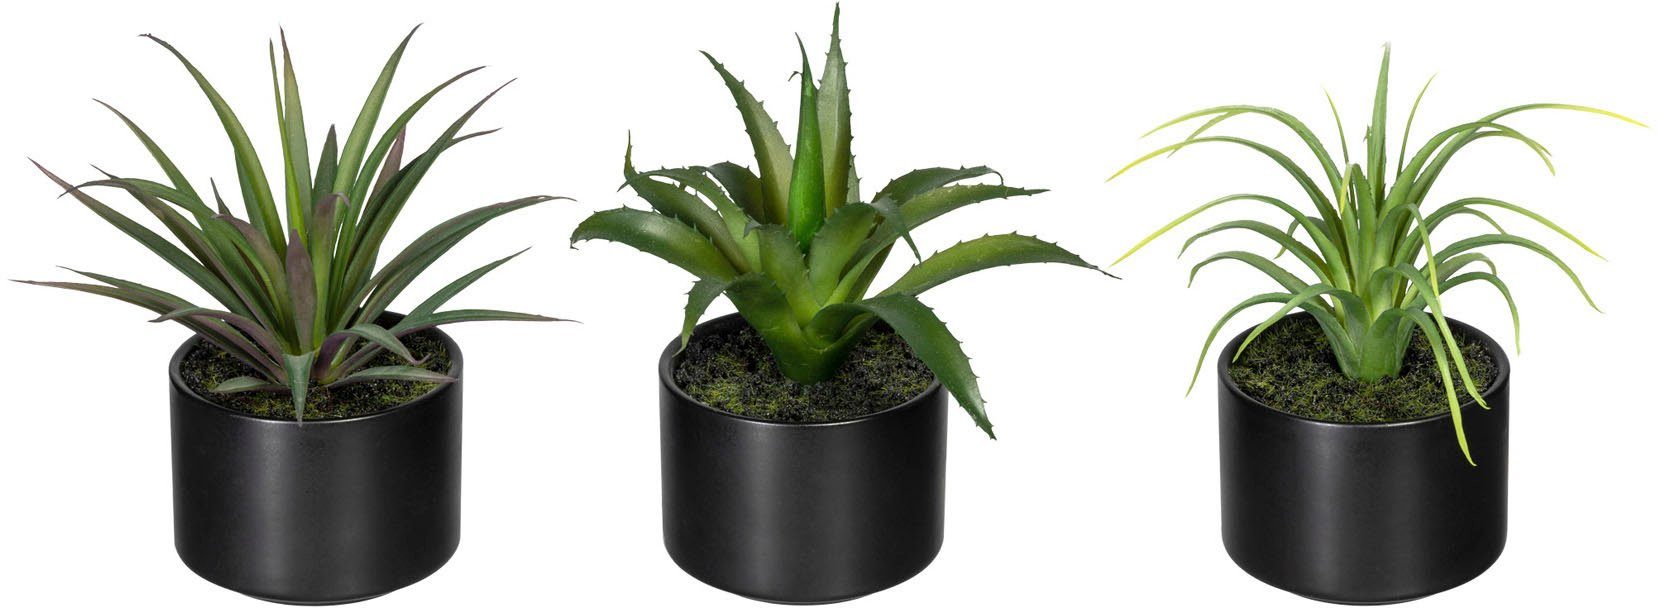 Künstliche Zimmerpflanze Set aus Aloe, Agave und Tillandsie Sukkulente, Creativ  green, Höhe 15 cm, im Keramiktopf, 3er Set | Kunstpflanzen